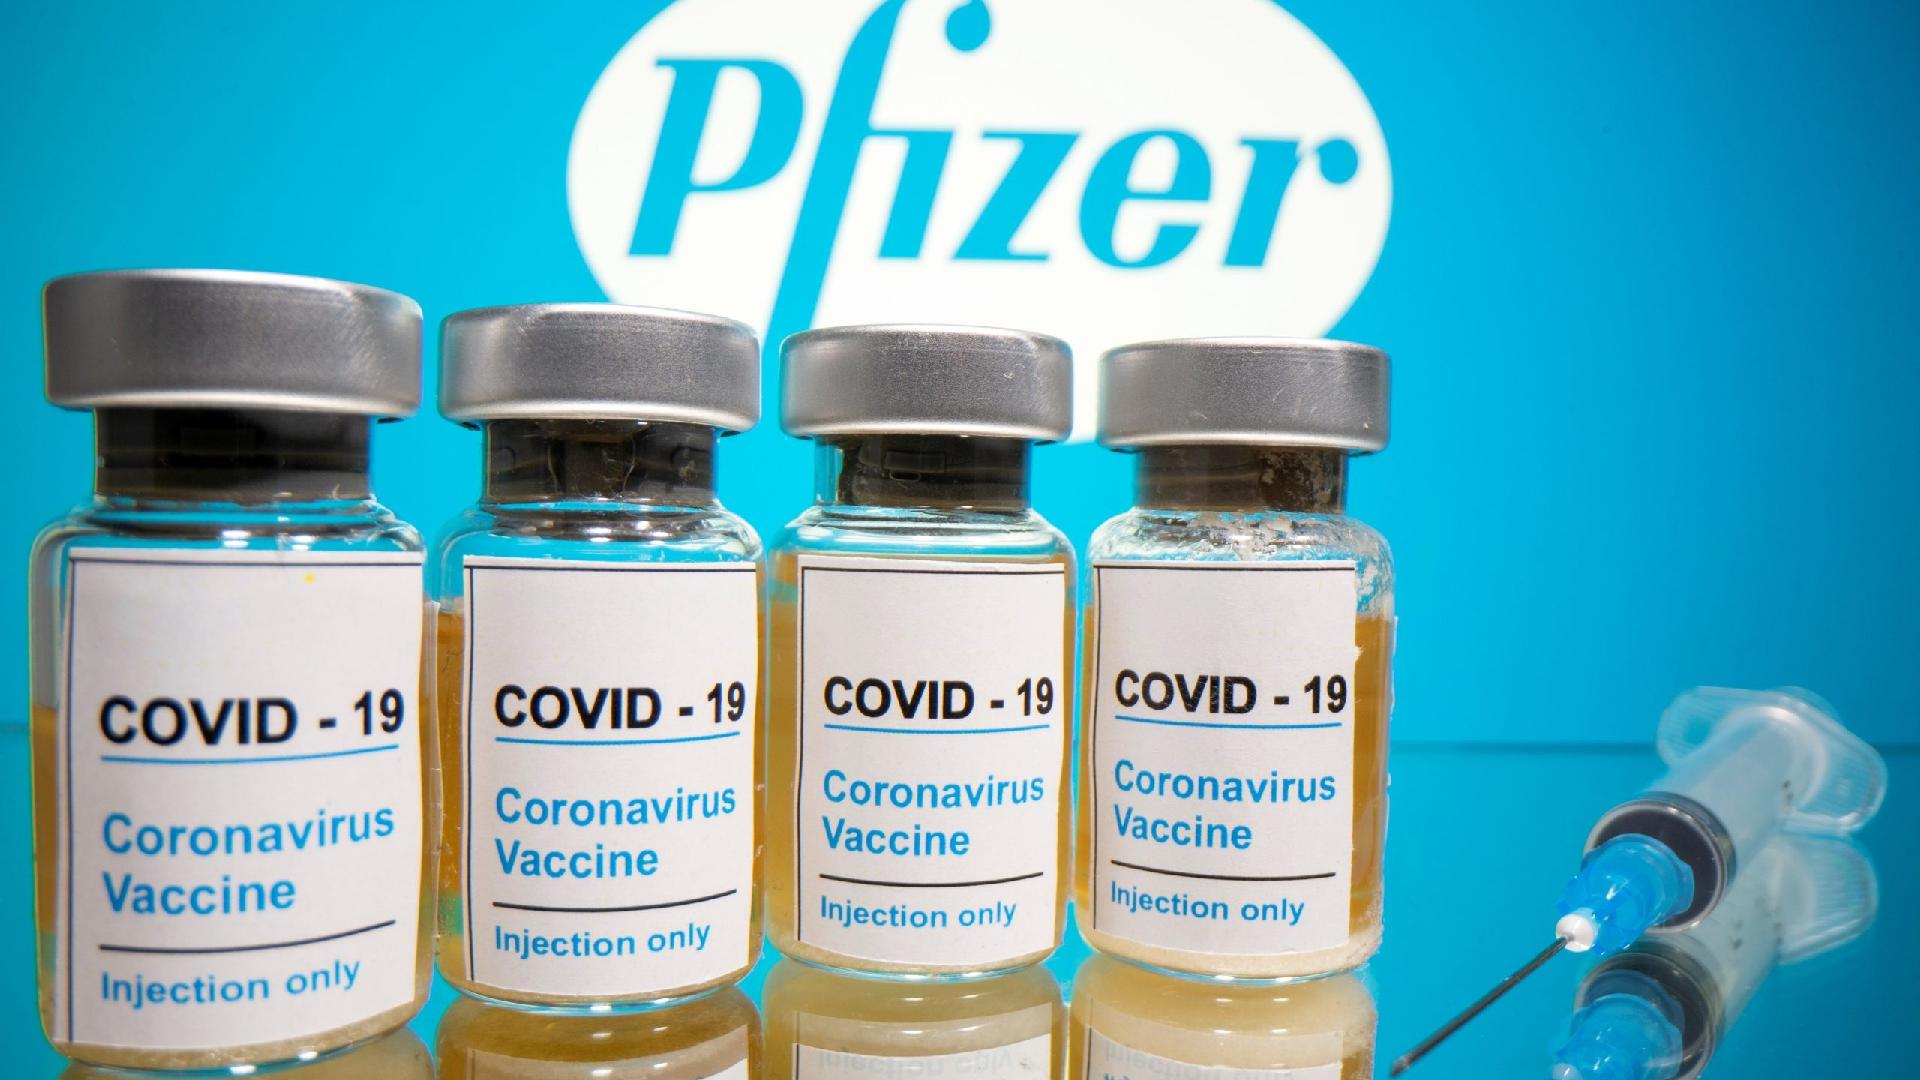 Brasil tem 'alguns dias ou semanas' para solicitar vacina, diz Pfizer -  02/12/2020 - UOL Notícias